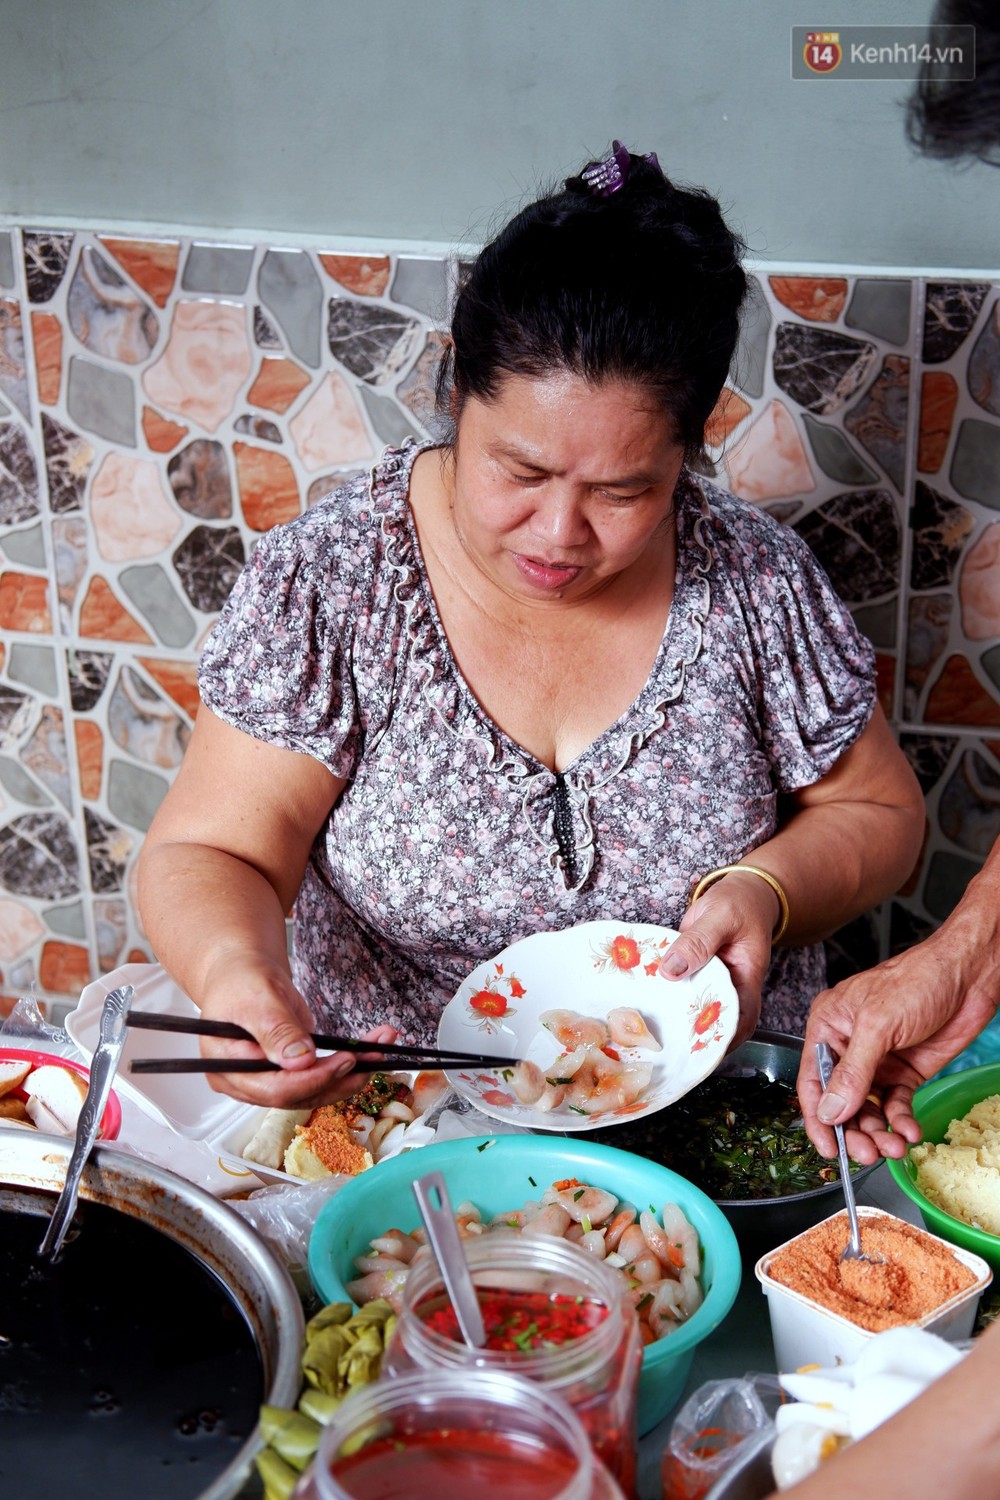 Tiệm ăn hàng 30 năm của dì Gái chịu chơi nhất Sài Gòn, mỗi ngày bán trong 1 giờ là hết veo - Ảnh 3.